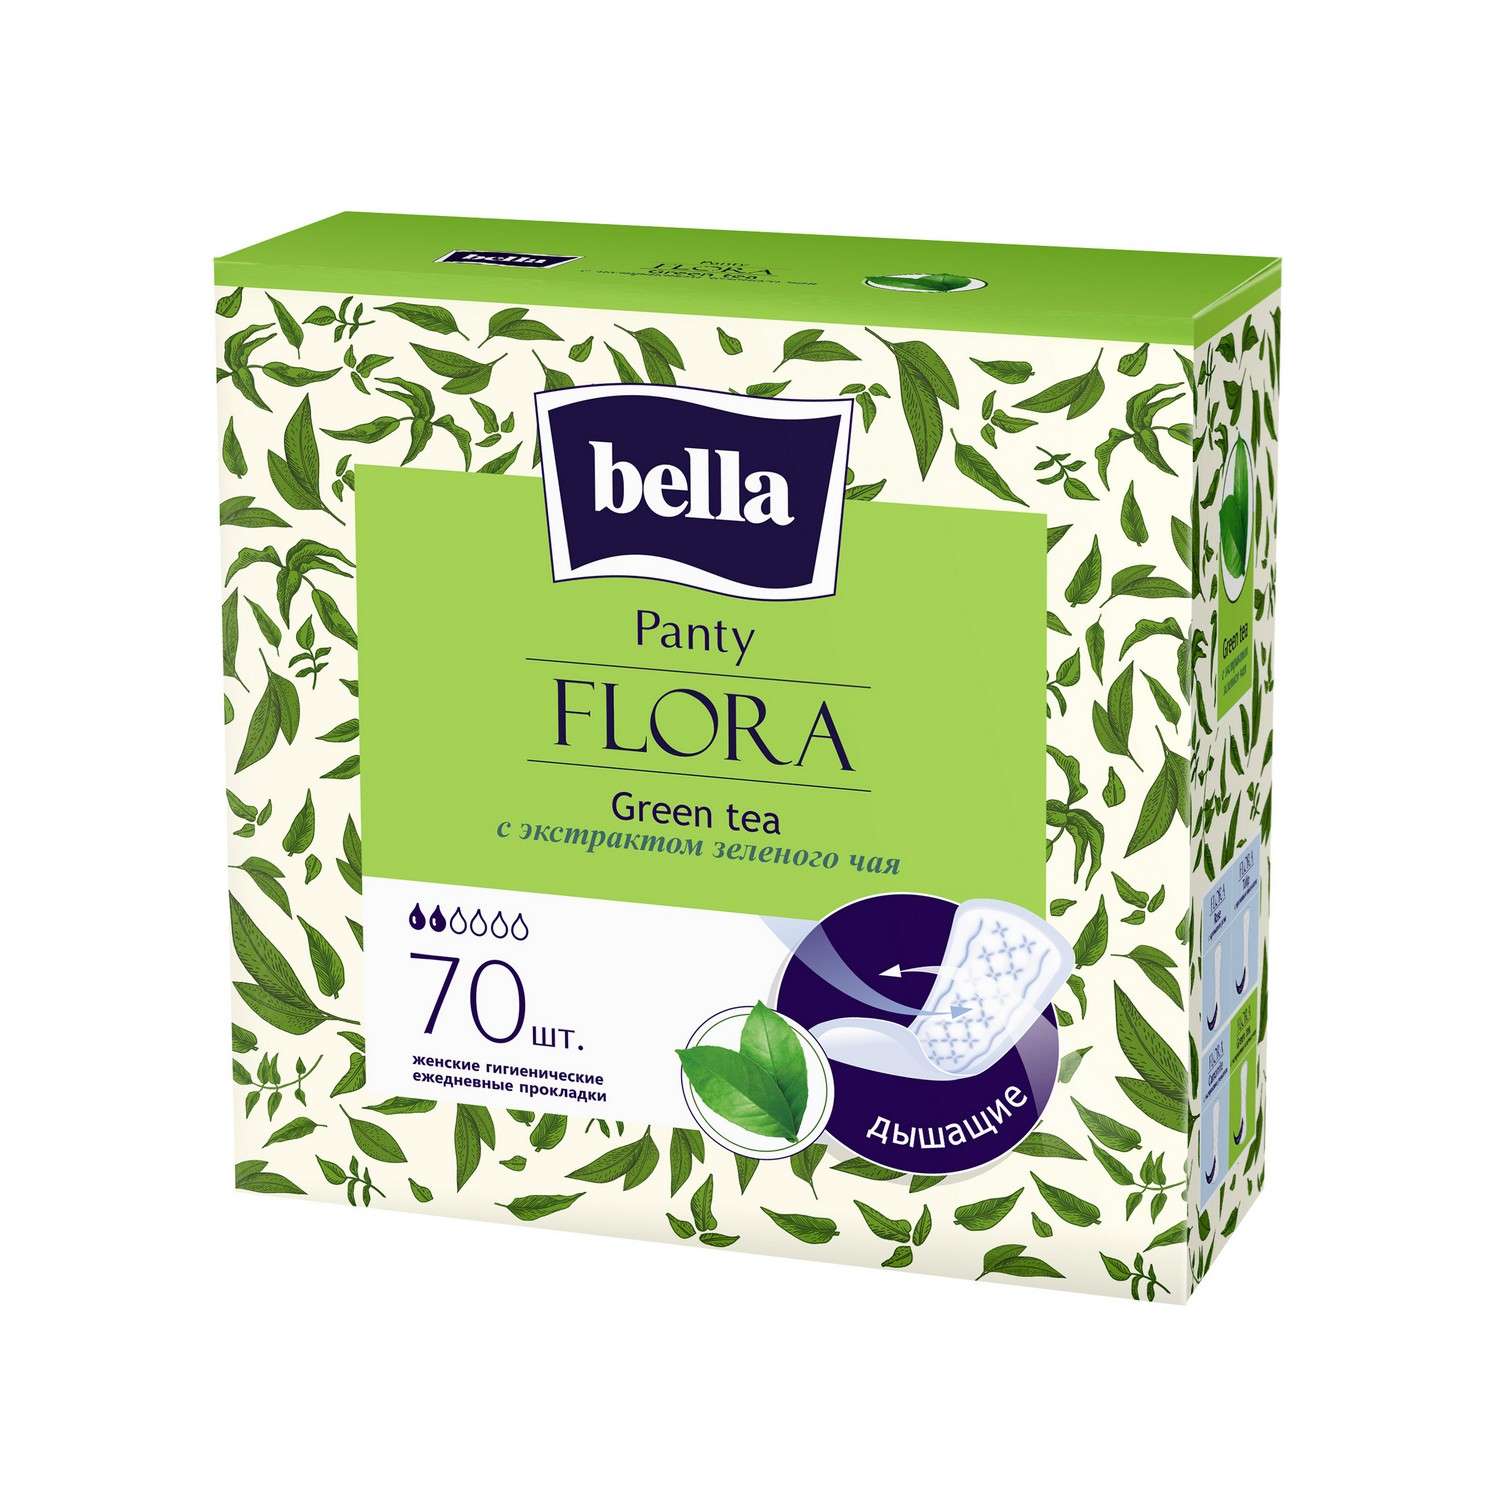 Ежедневные прокладки BELLA Panty Flora Green tea с экстрактом зеленого чая 70 шт - фото 1